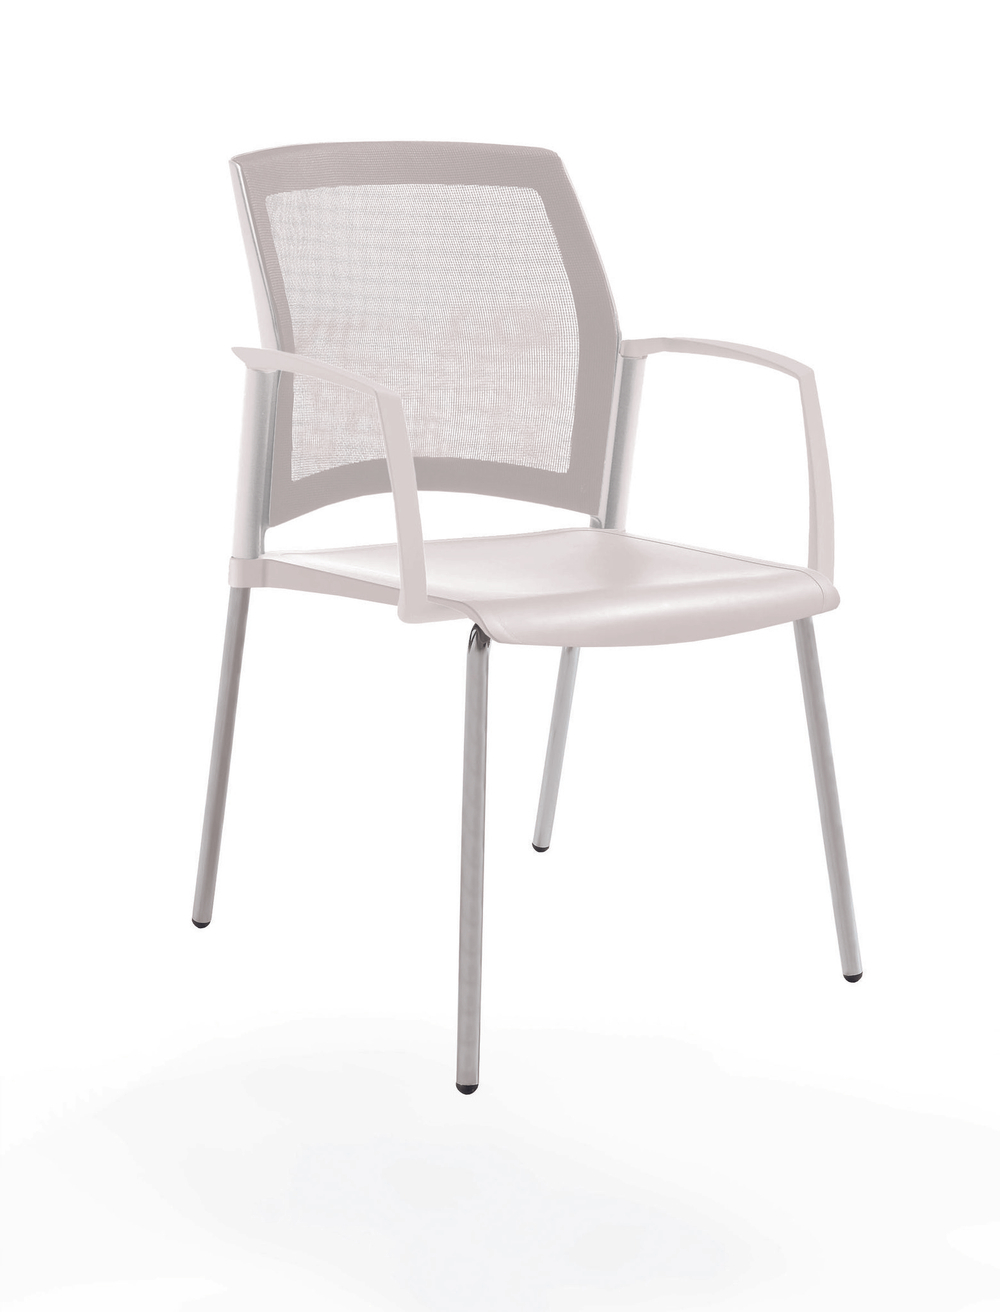 стул Rewind на 4 ногах, каркас серыйй, пластик белый, спинка-сетка, с закрытыми подлокотниками